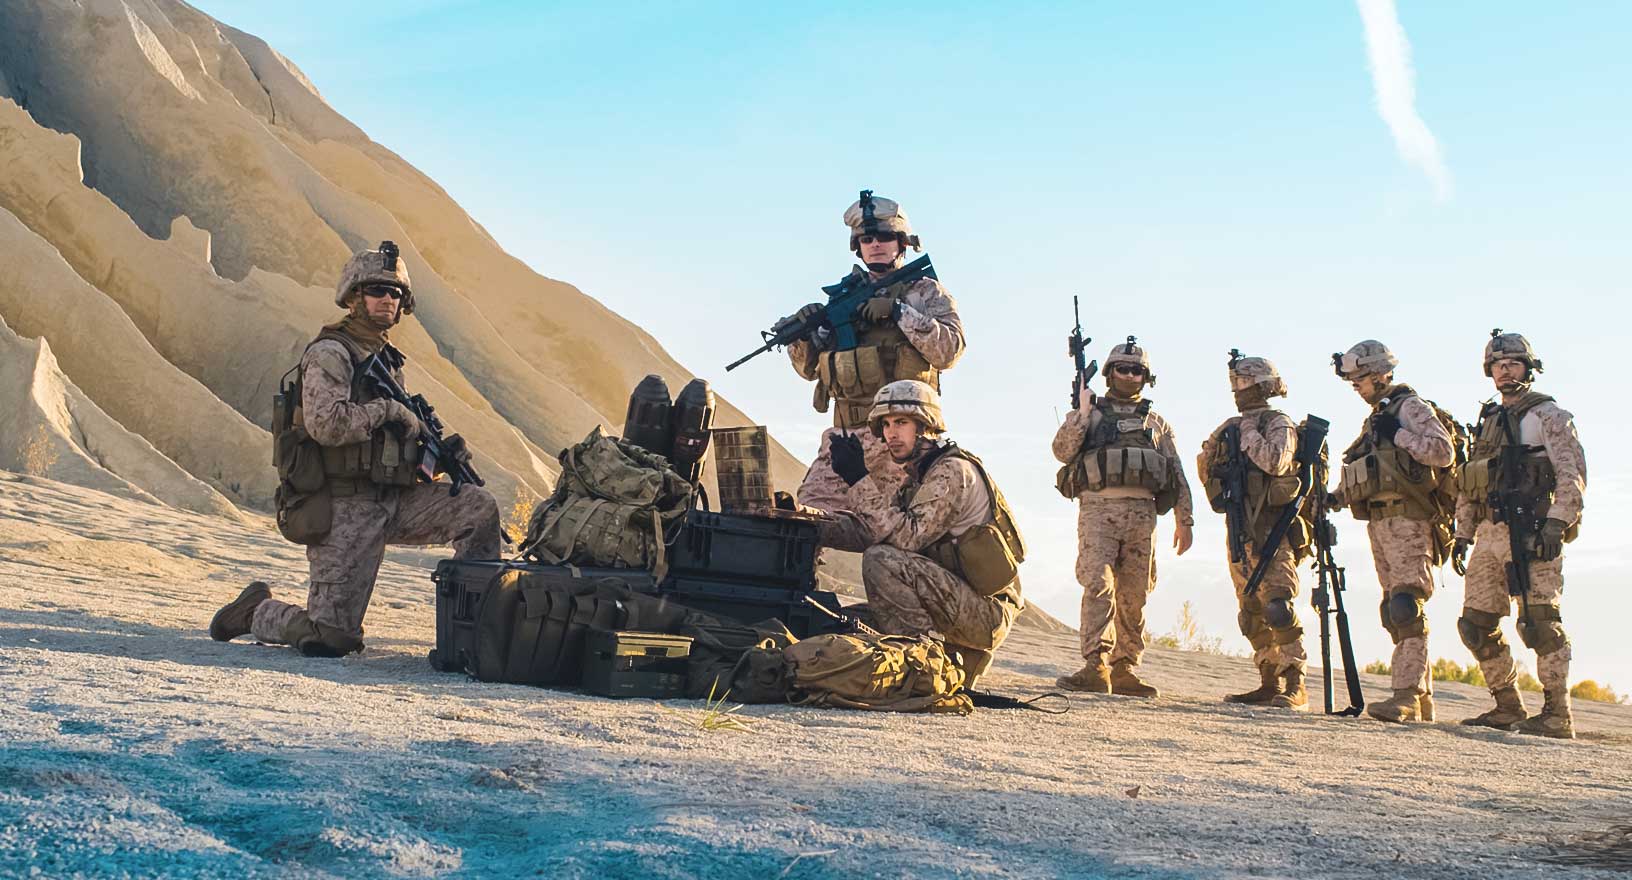 Grupo de soldados norte-americanos em uma missão de reconhecimento.